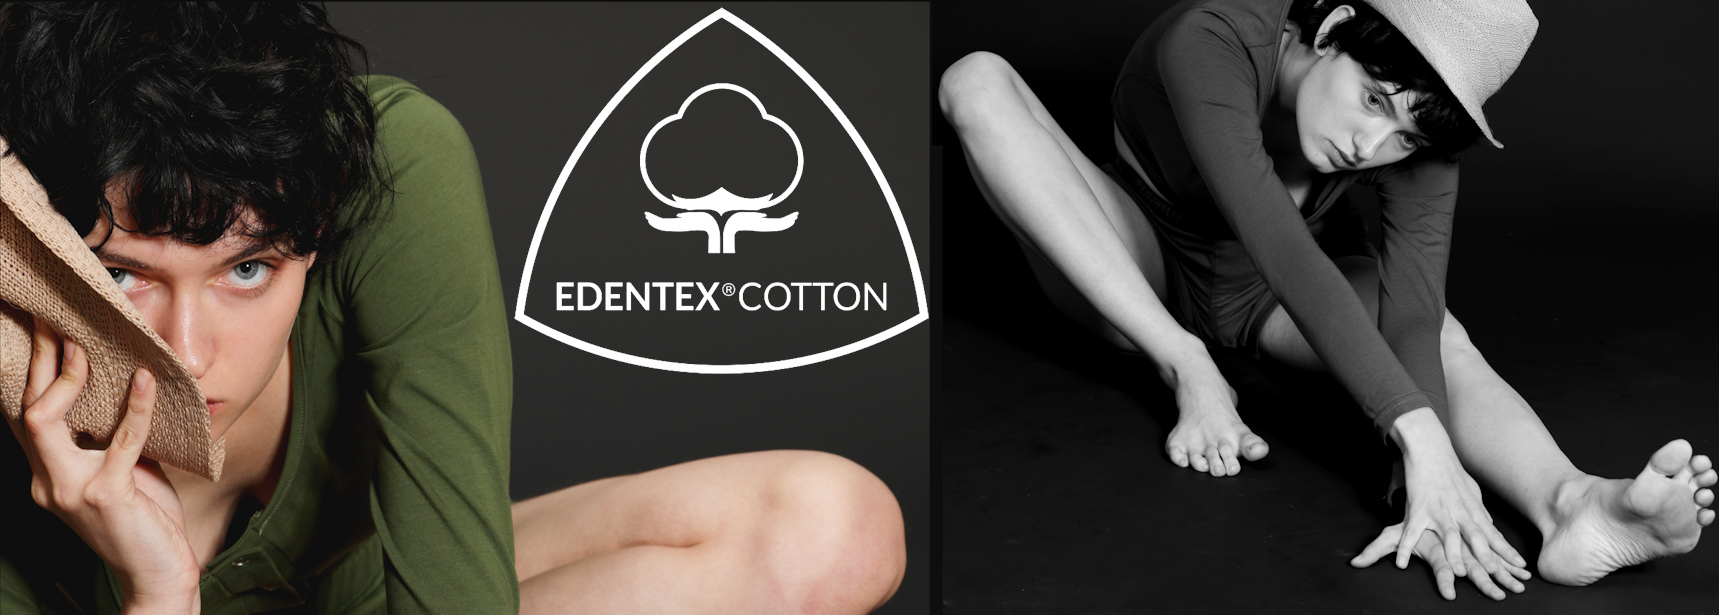 Aby zbudować markę + zabezpieczyć się przed kopiowaniem: EDENTEX®COTTON. Jakość nie do podrobienia!